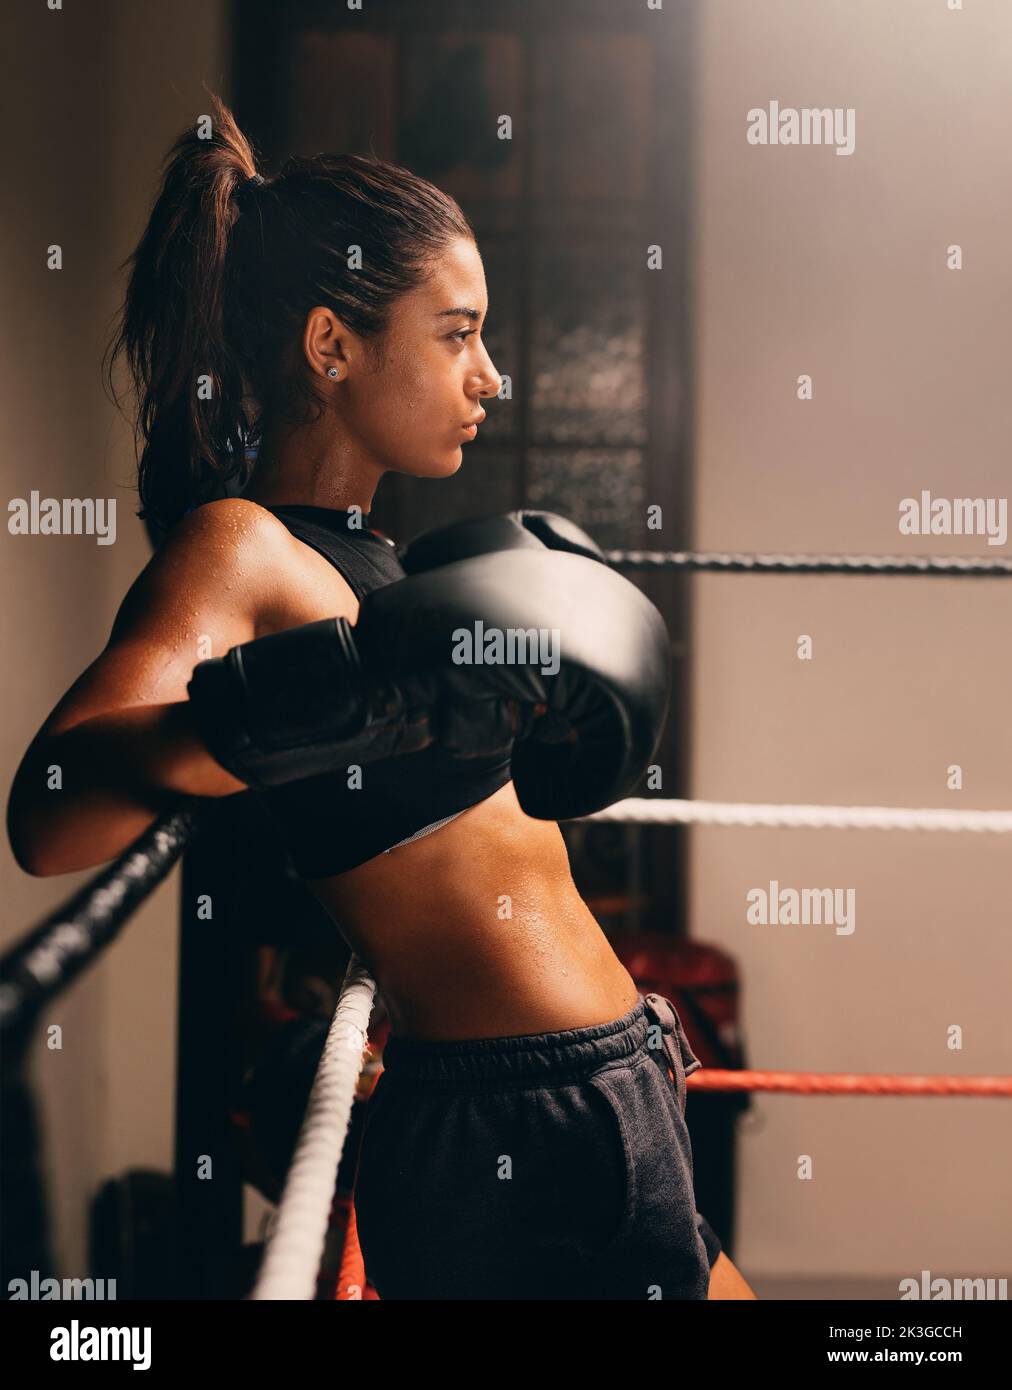 Boxeur féminin musclé appuyé contre les cordes dans un anneau de boxe. Une athlète féminine confiante se prépare à un match de boxe. Banque D'Images